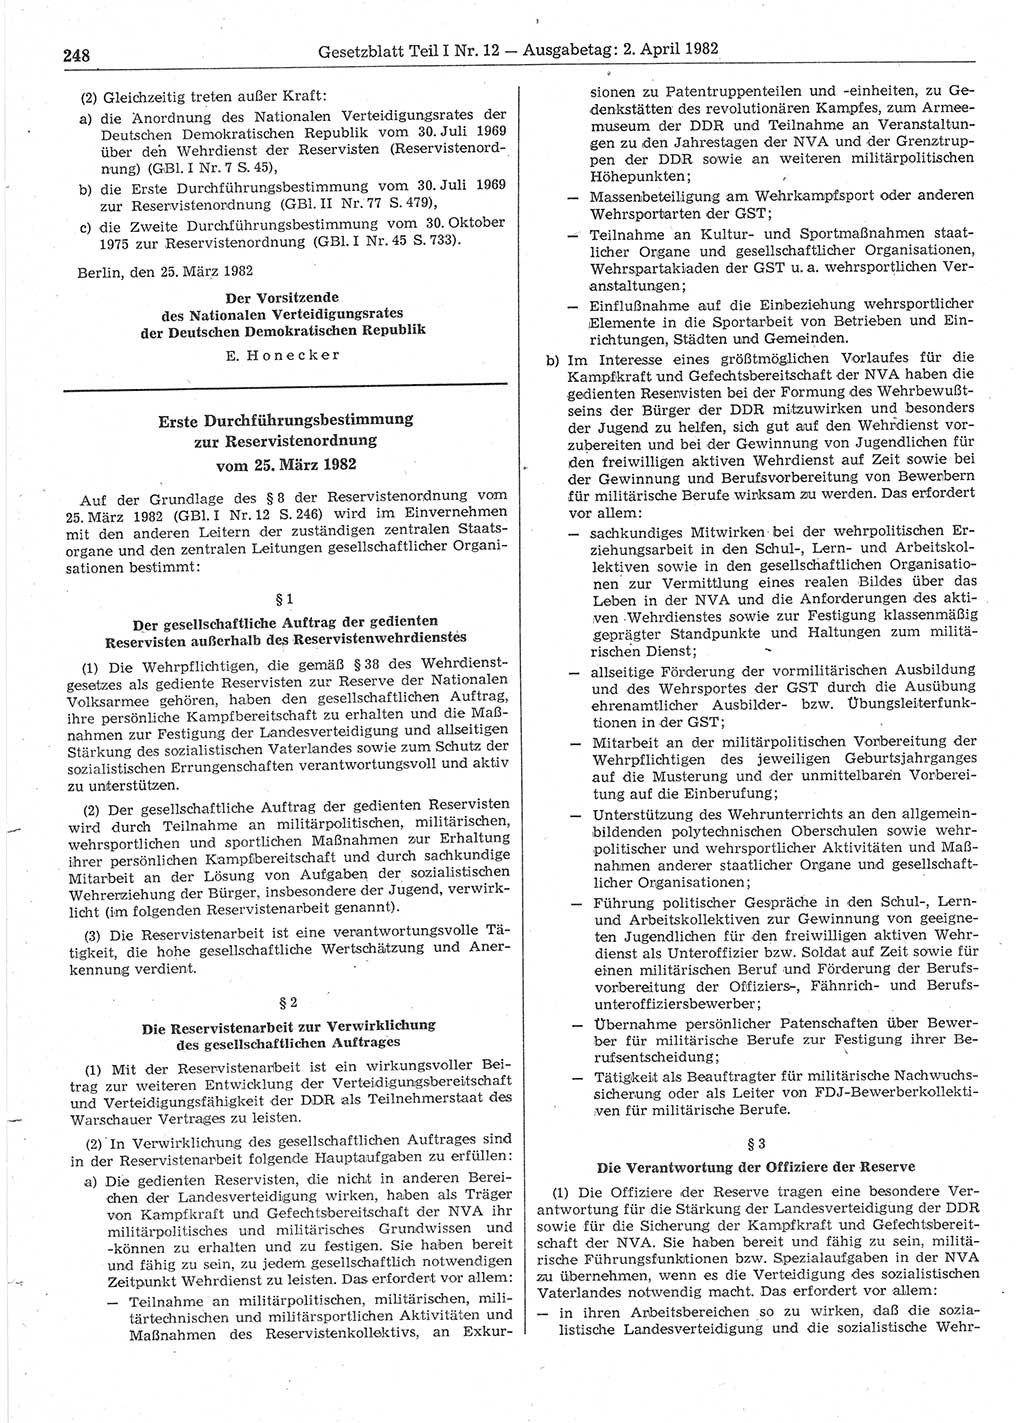 Gesetzblatt (GBl.) der Deutschen Demokratischen Republik (DDR) Teil Ⅰ 1982, Seite 248 (GBl. DDR Ⅰ 1982, S. 248)